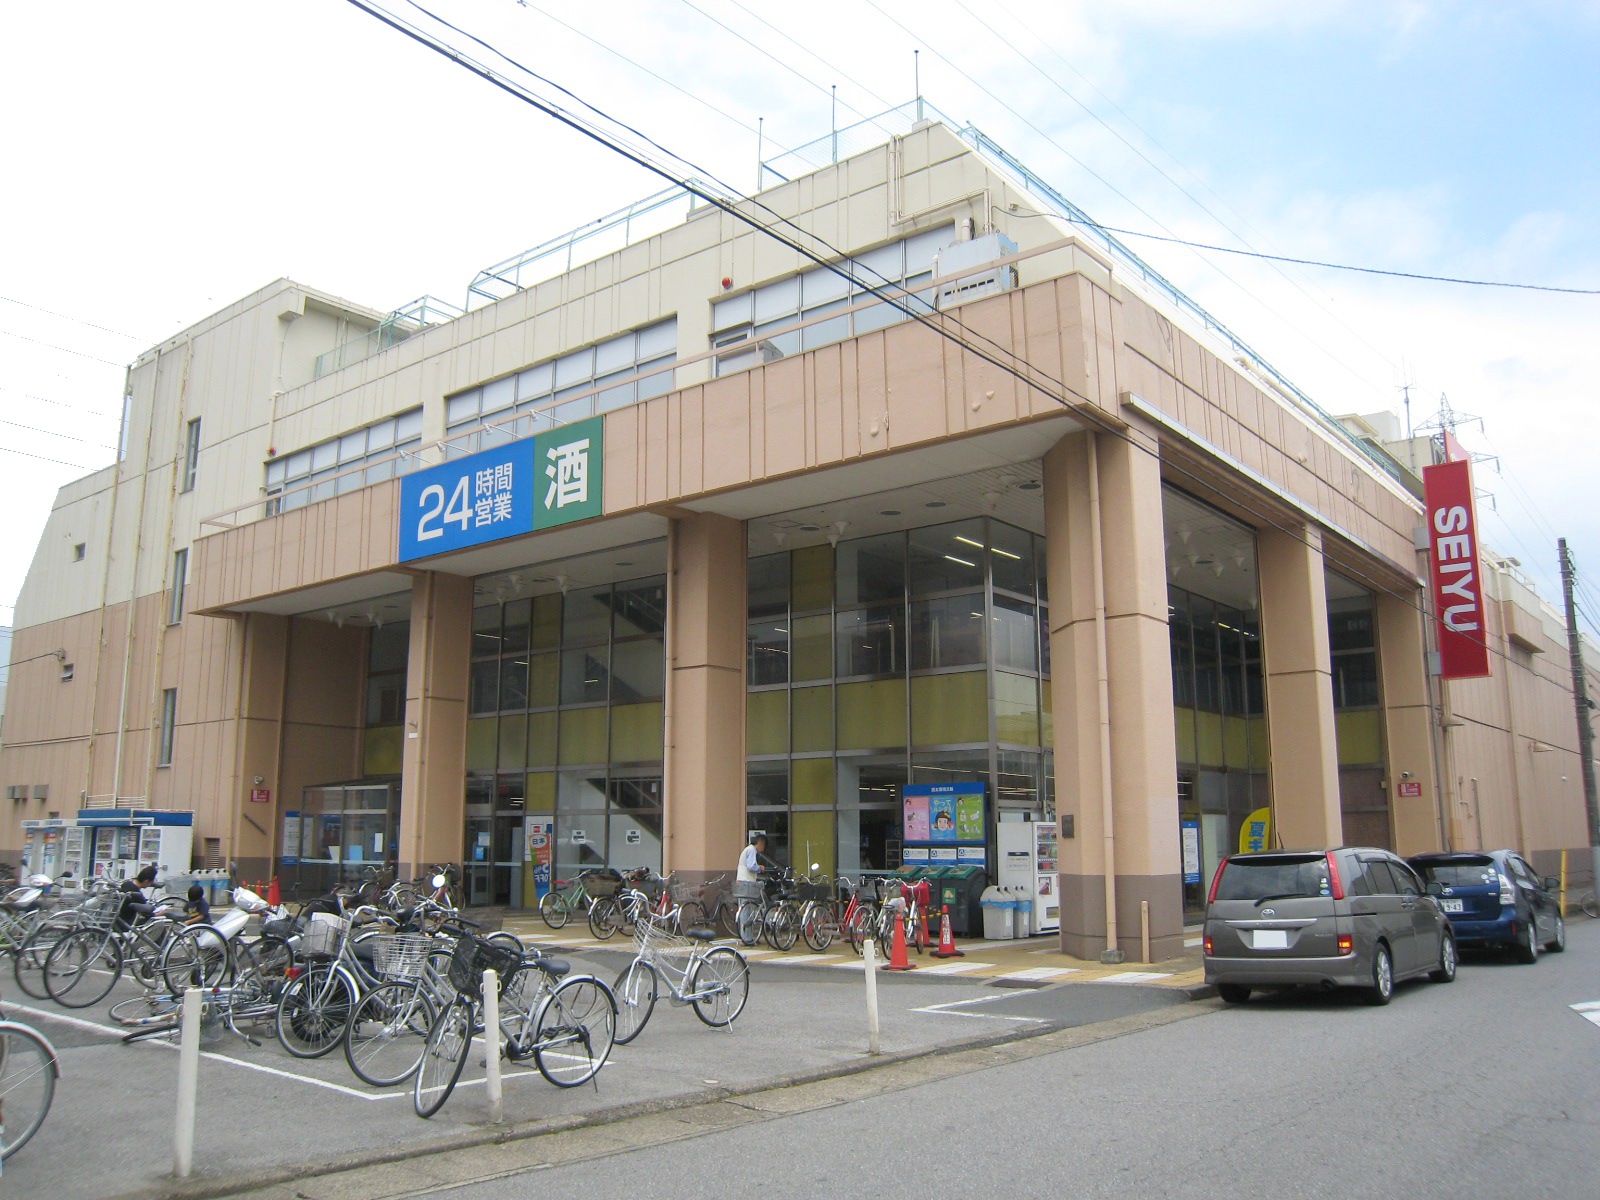 Supermarket. Seiyu Tsuga store up to (super) 514m